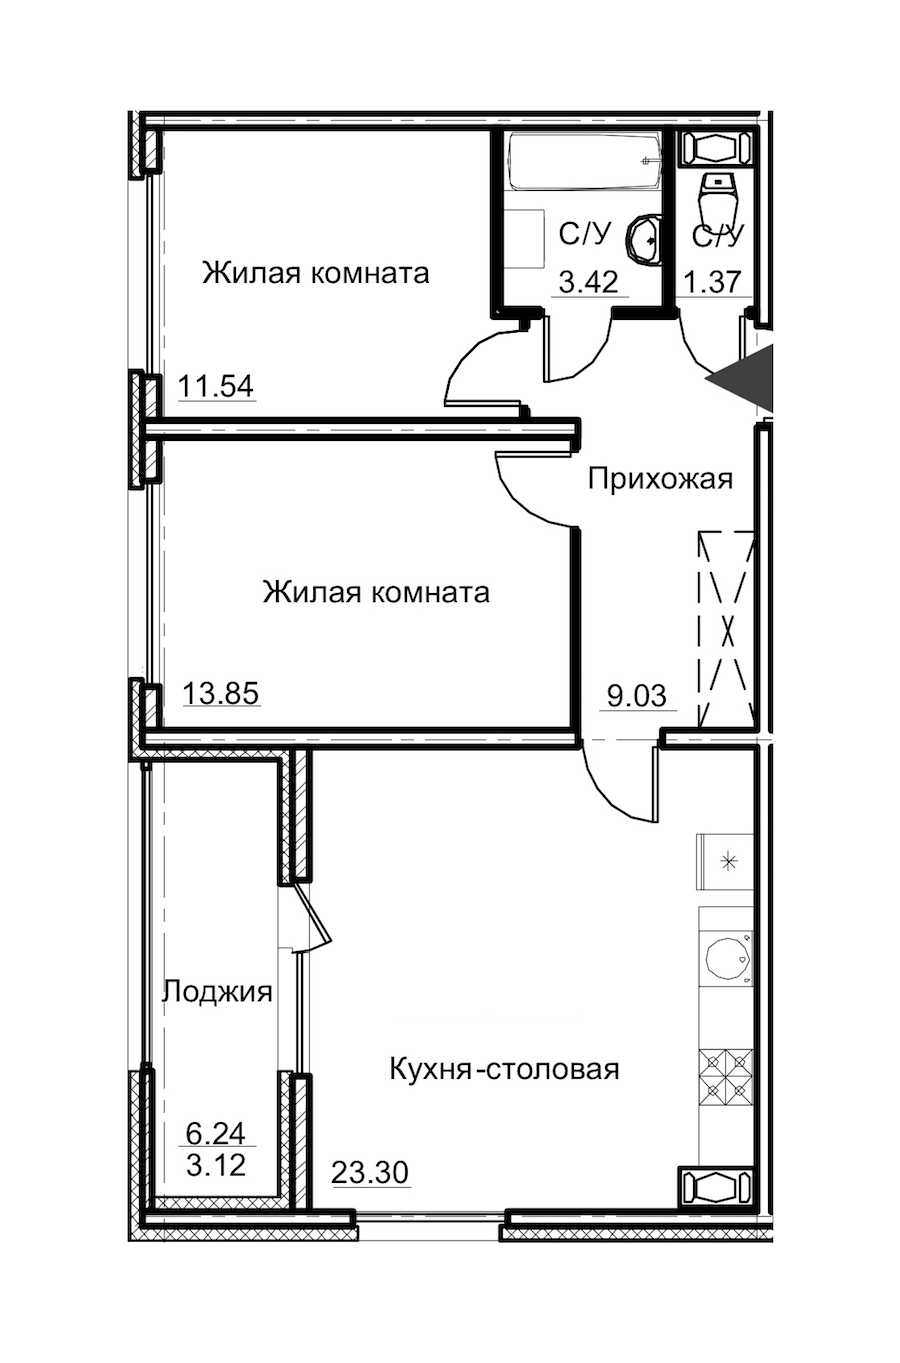 Двухкомнатная квартира в : площадь 65.63 м2 , этаж: 8 – купить в Санкт-Петербурге